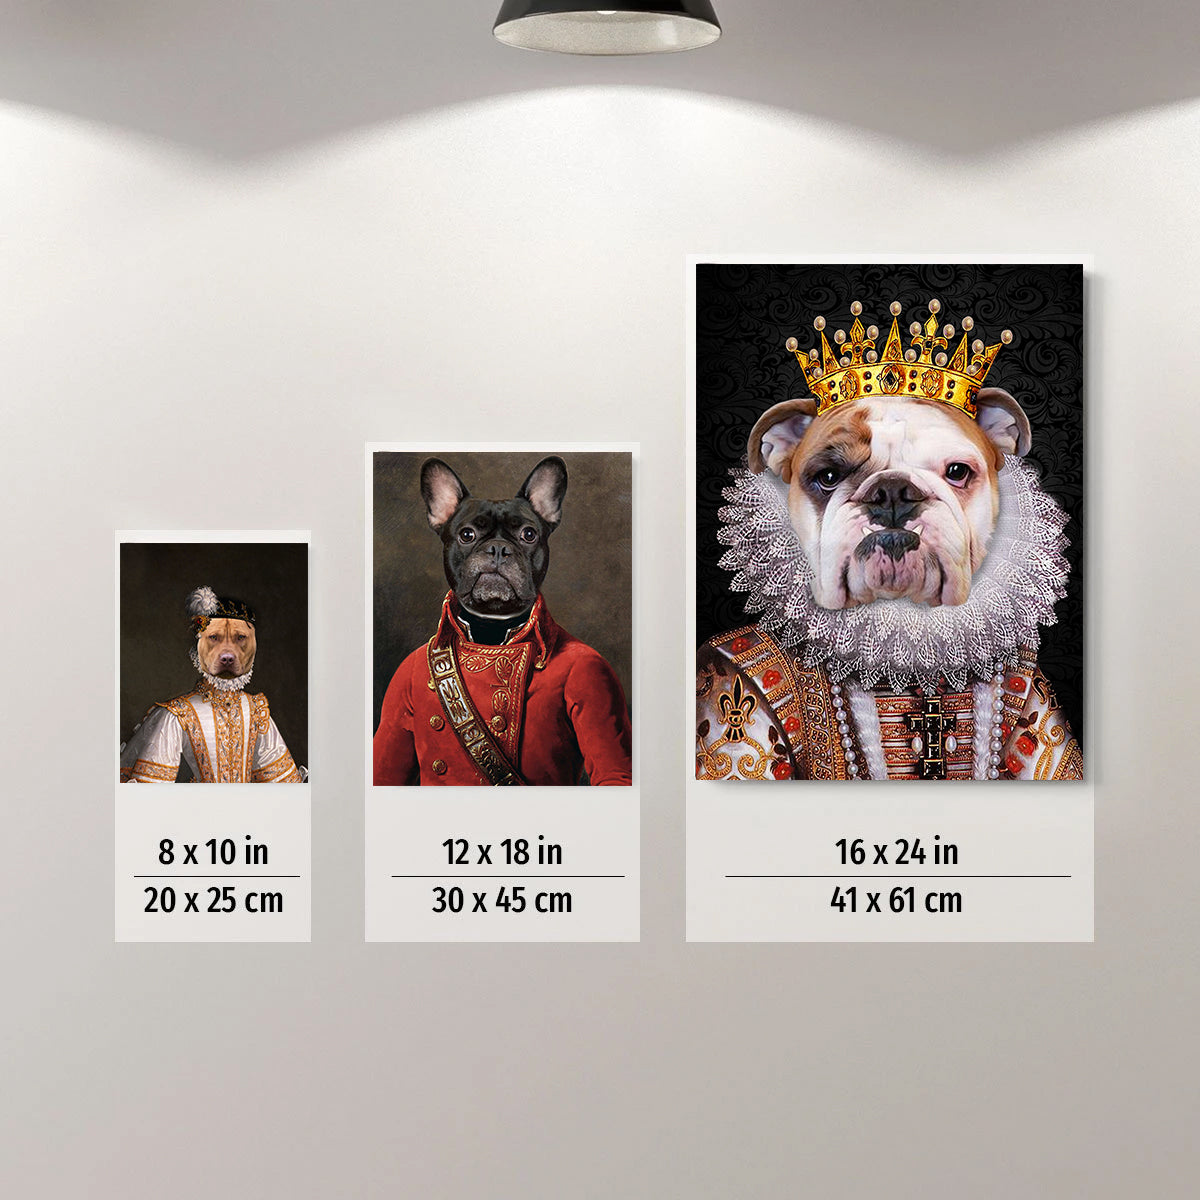 The Crown Princess Custom Pet Portrait Digital Download - Noble Pawtrait